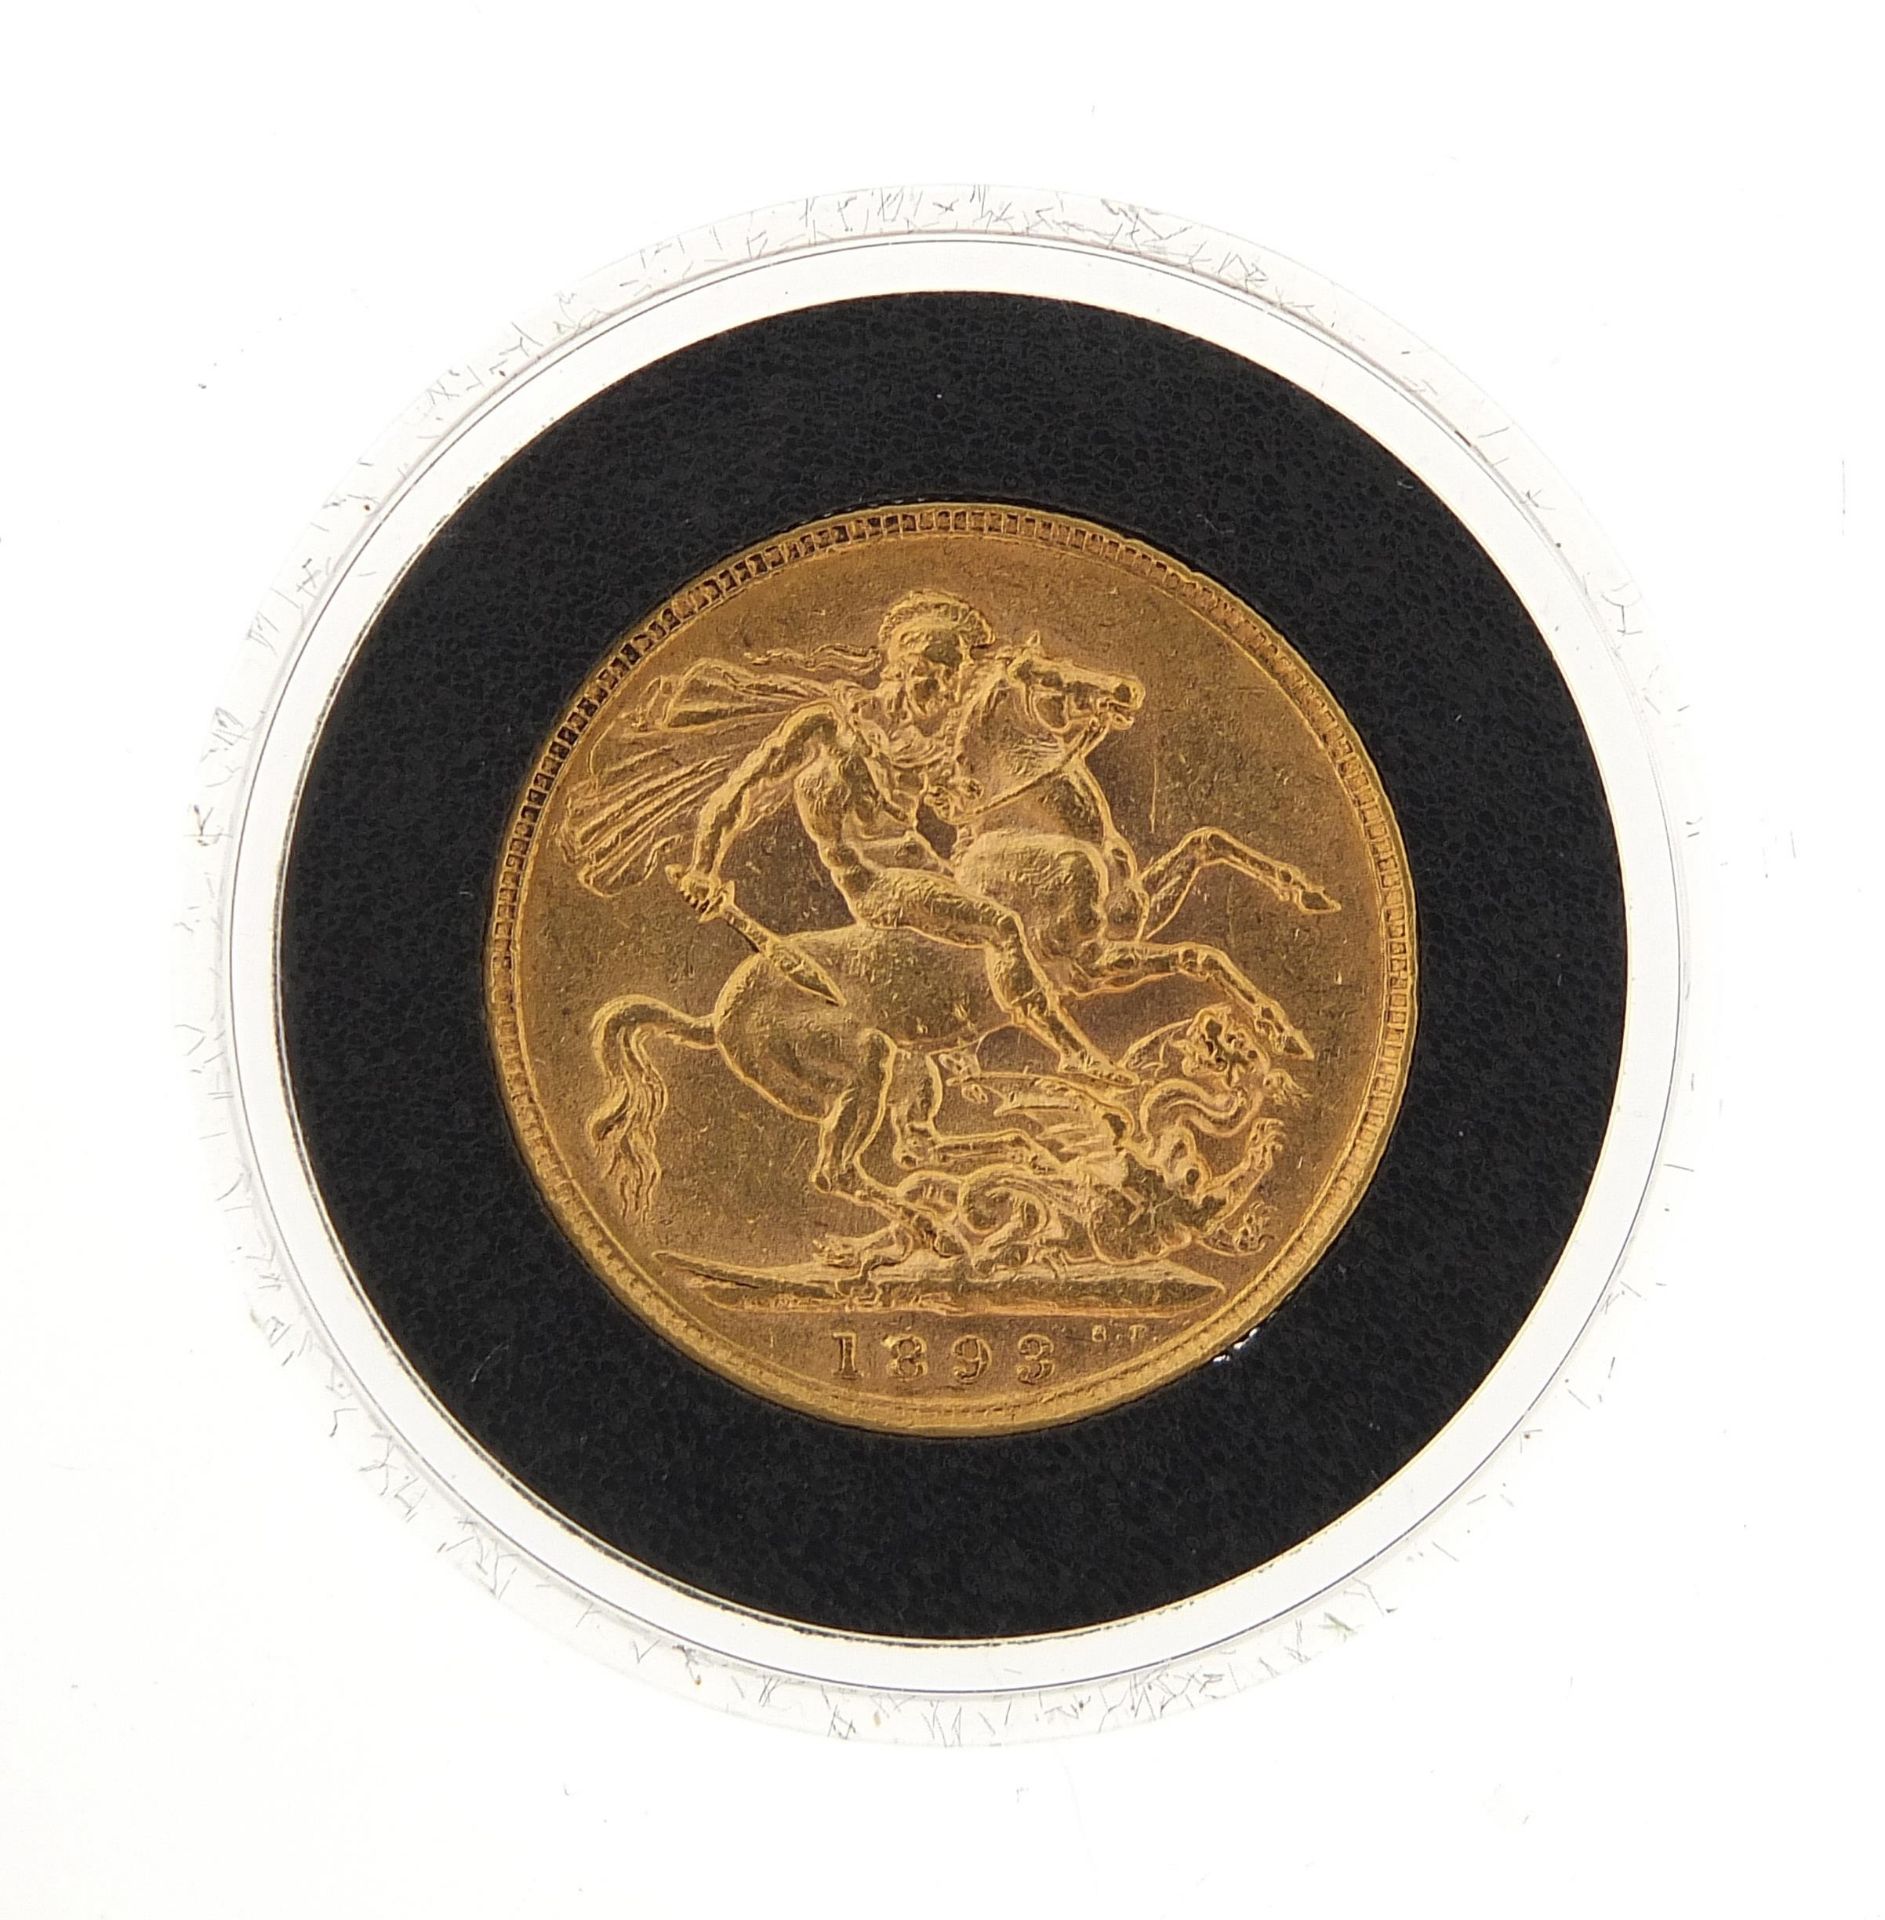 Queen Victoria 1893 gold sovereign